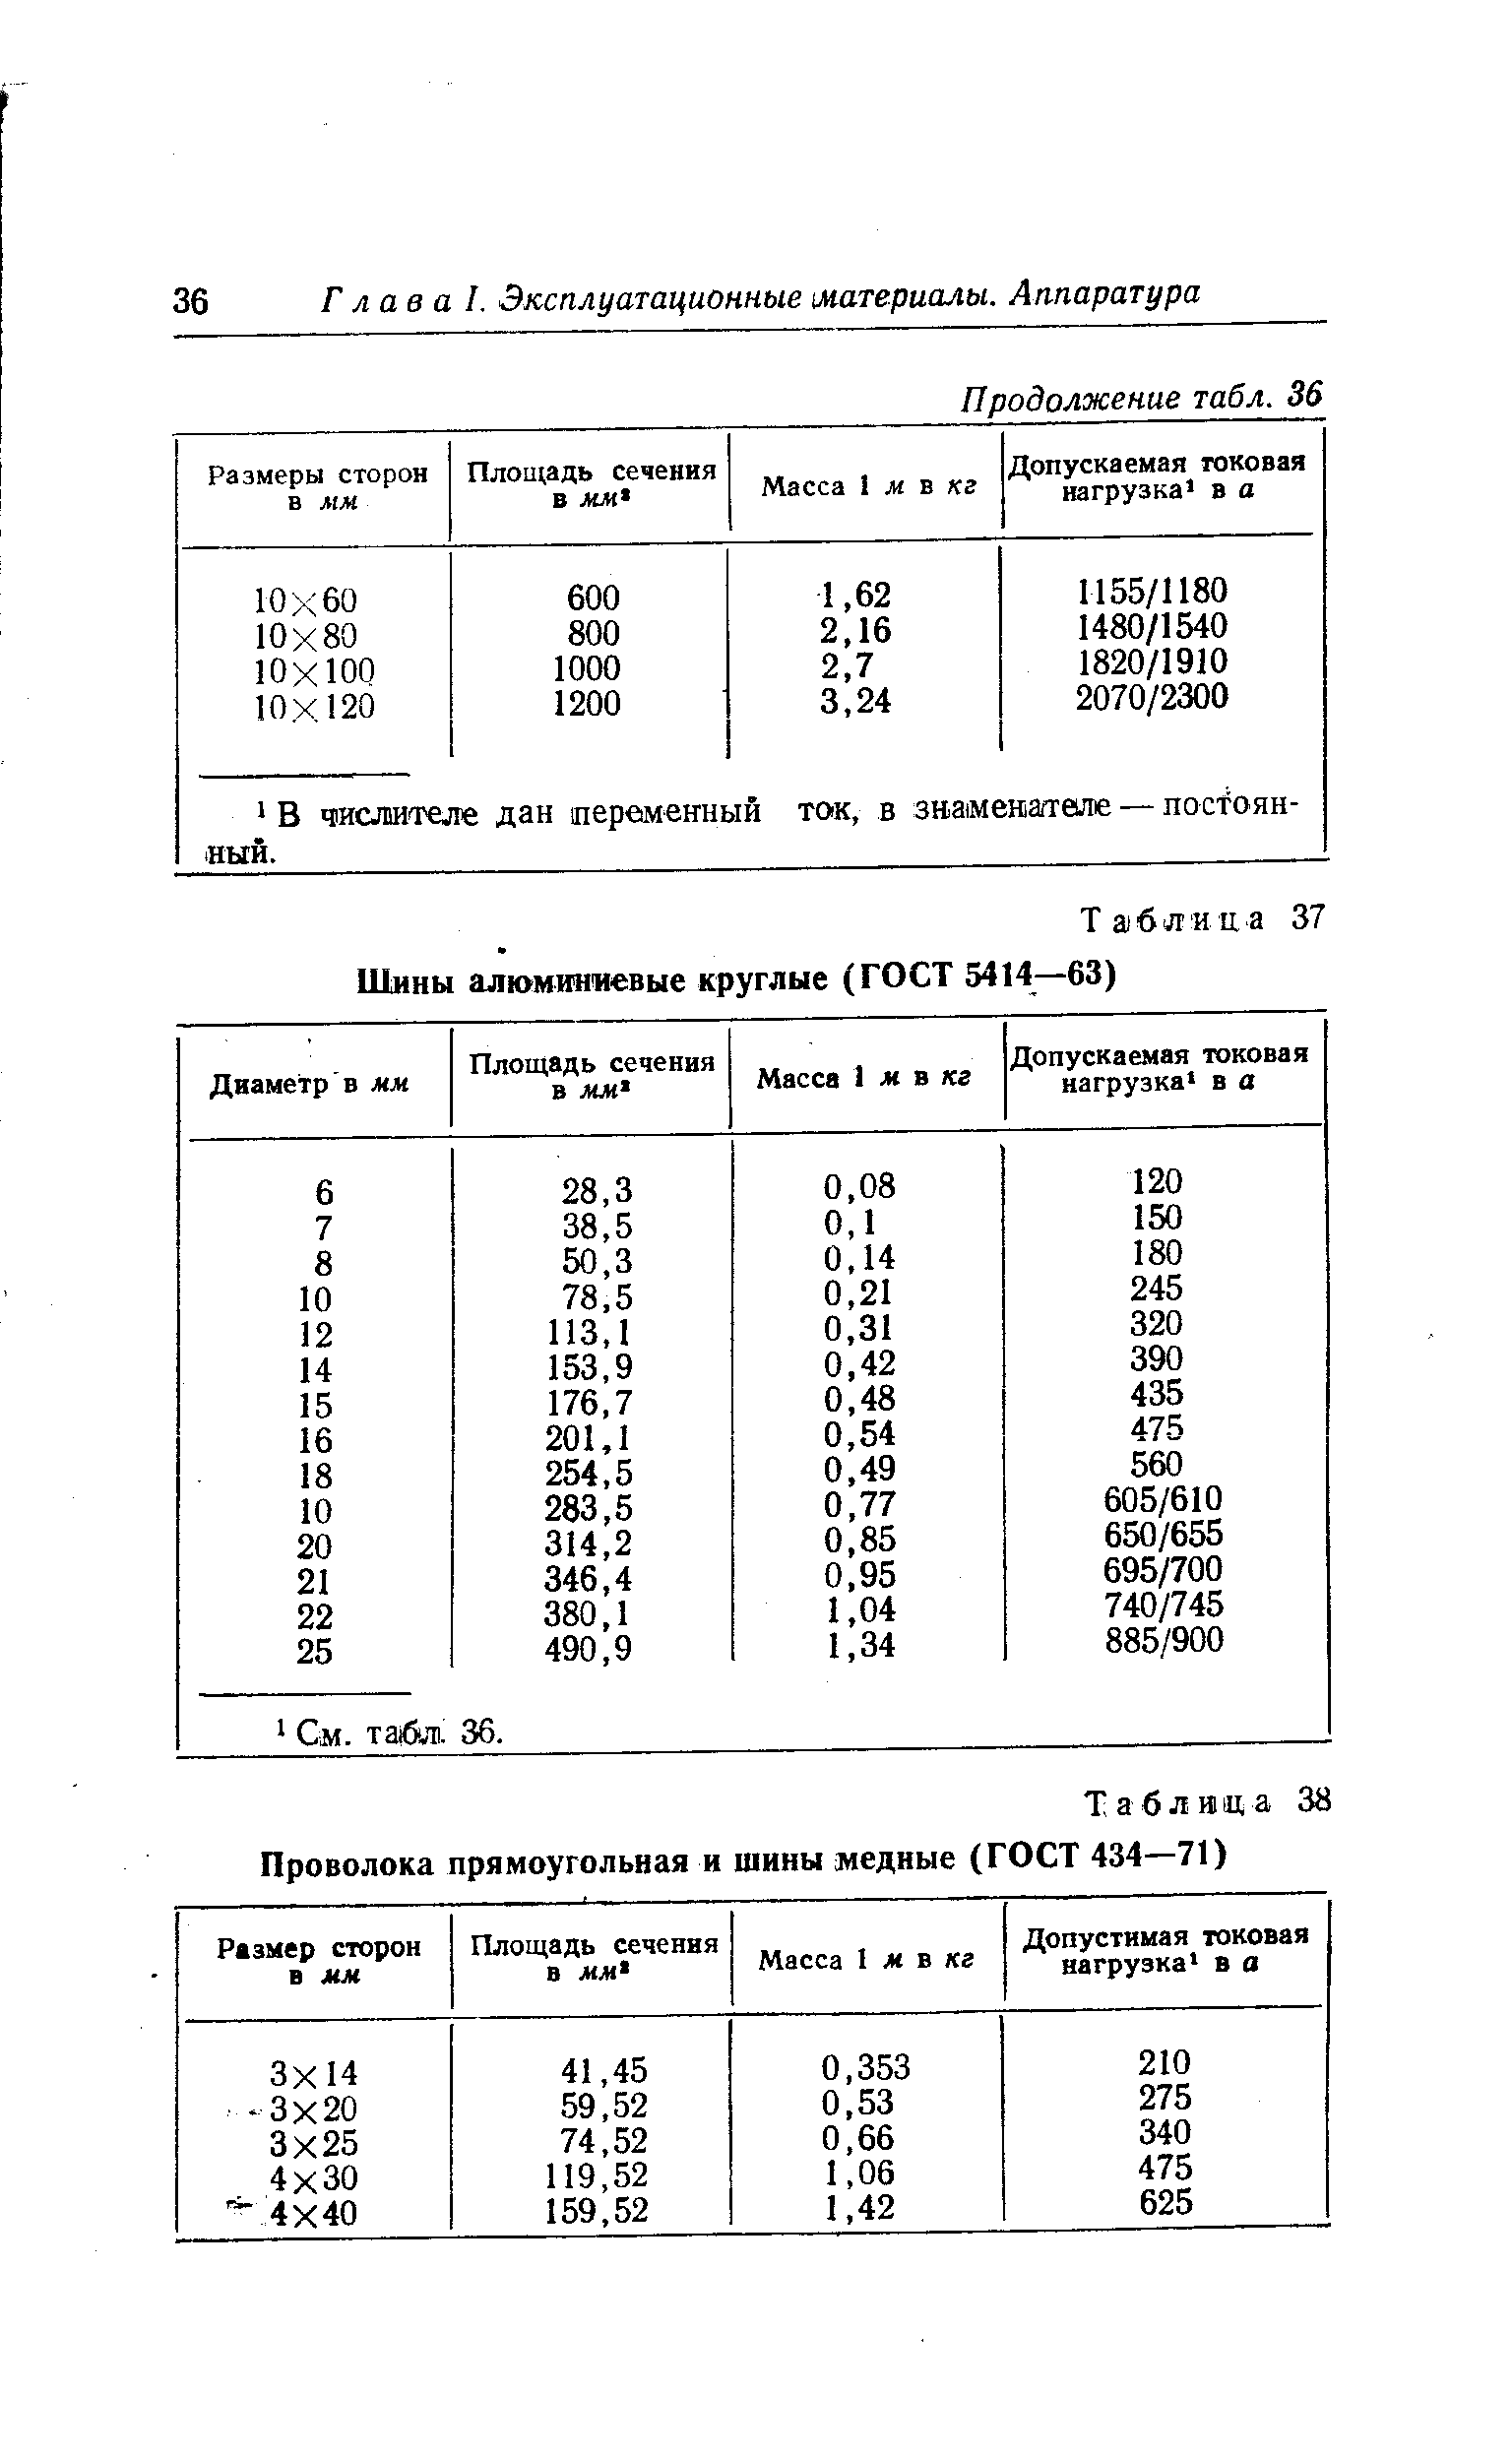 Таблица 38 Проволока прямоугольная и шины медные (ГОСТ 434—71)
